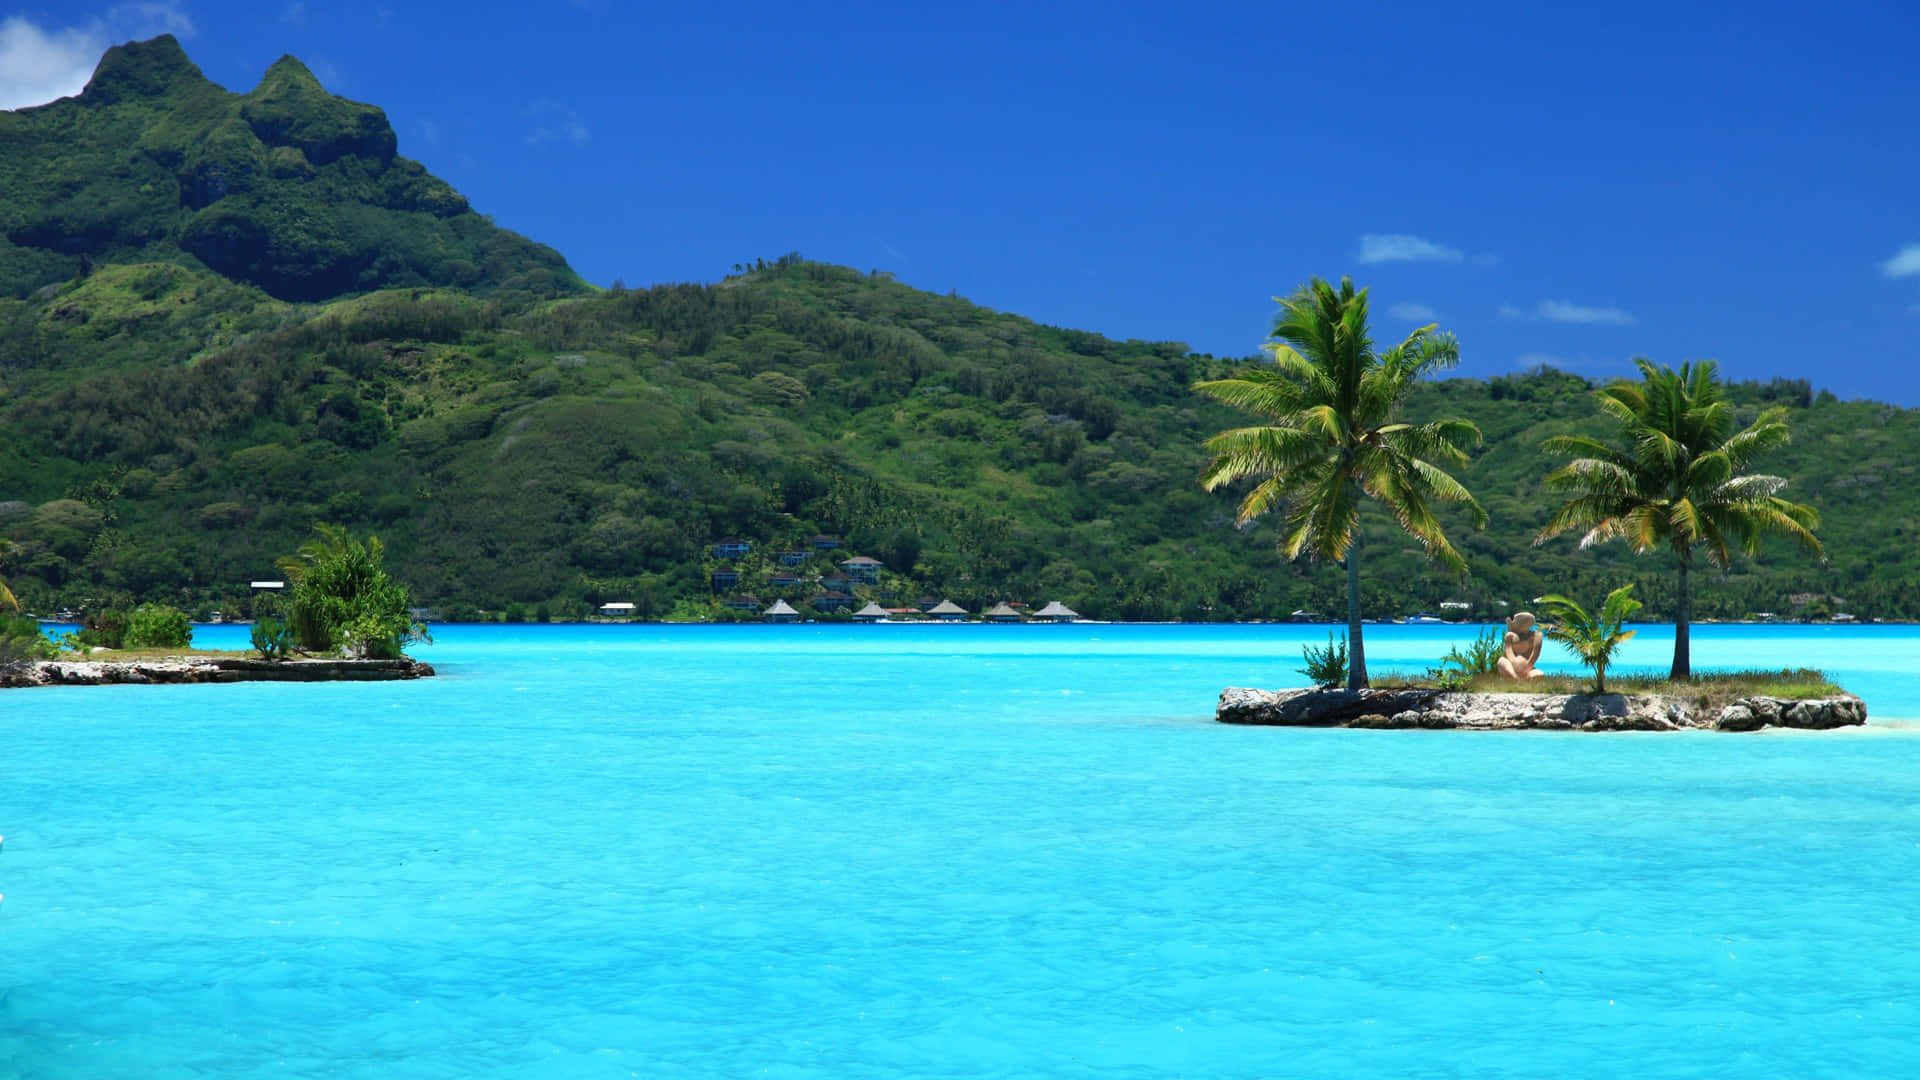 "Behold the beauty of Bora Bora"